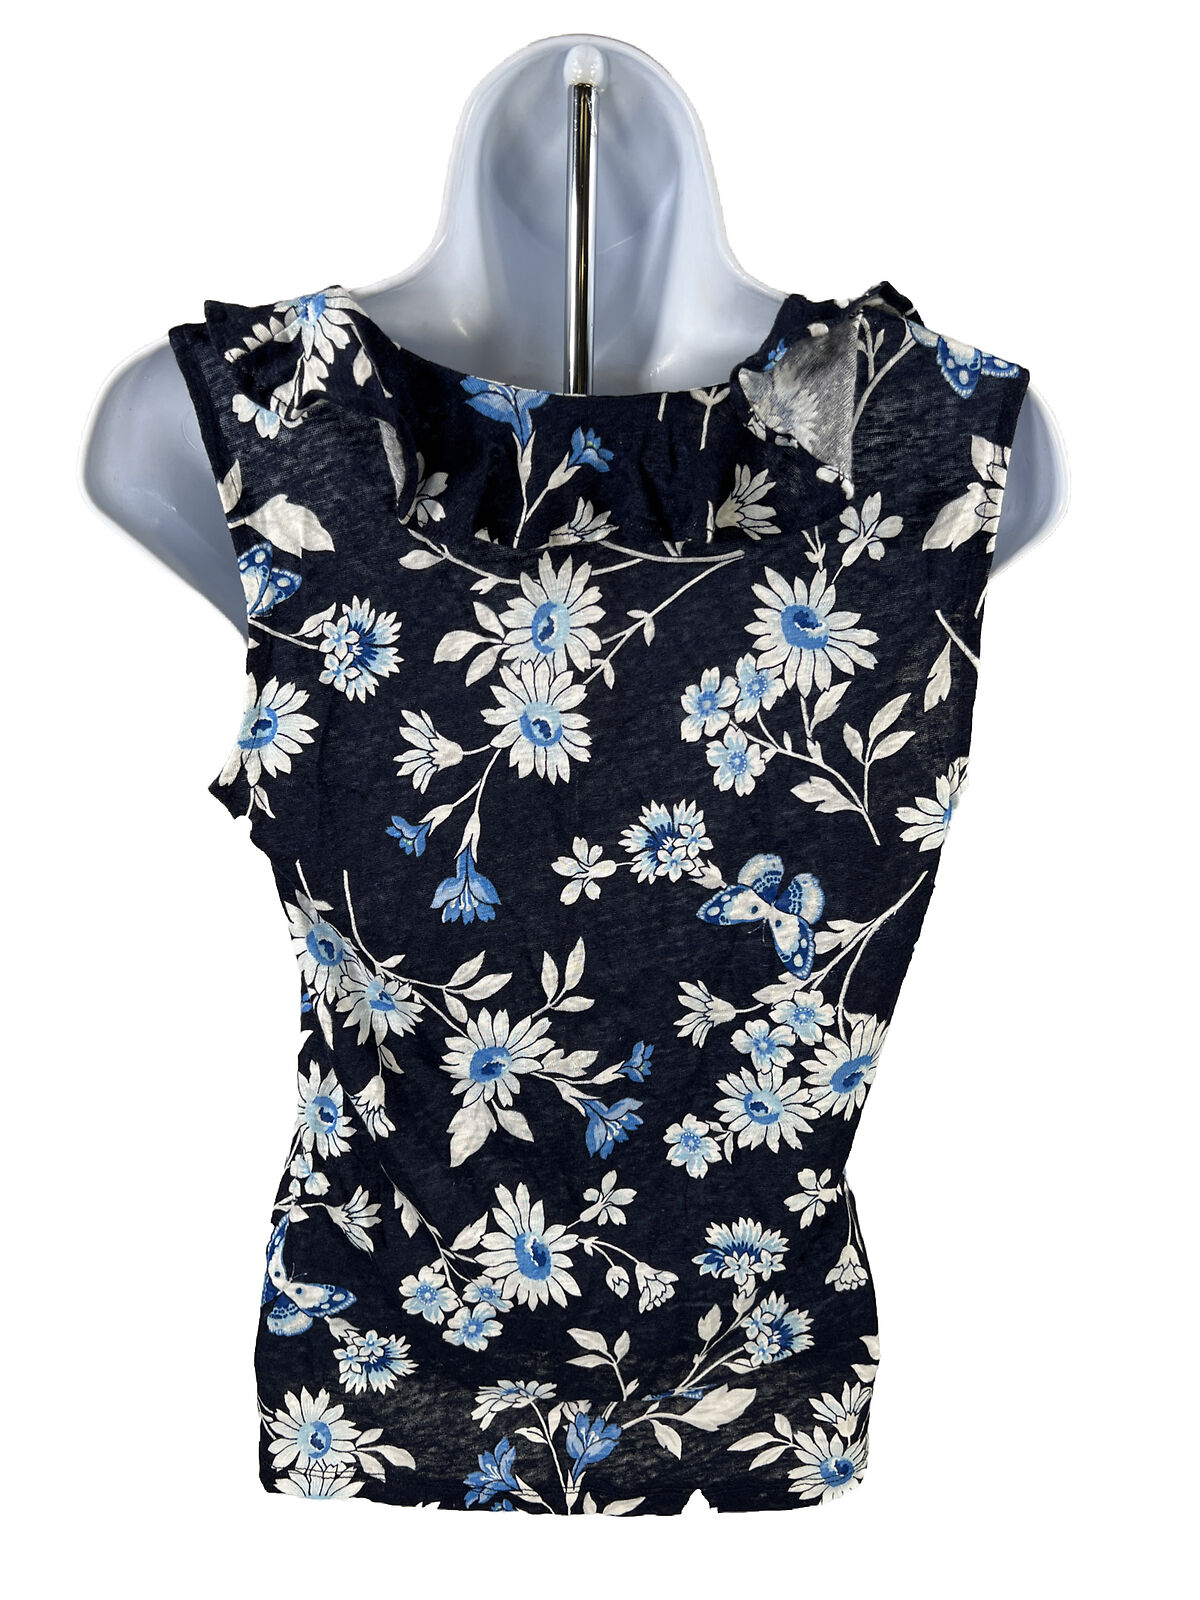 NUEVO Camiseta sin mangas con cuello con volantes y flores azules de Ann Taylor para mujer - XS